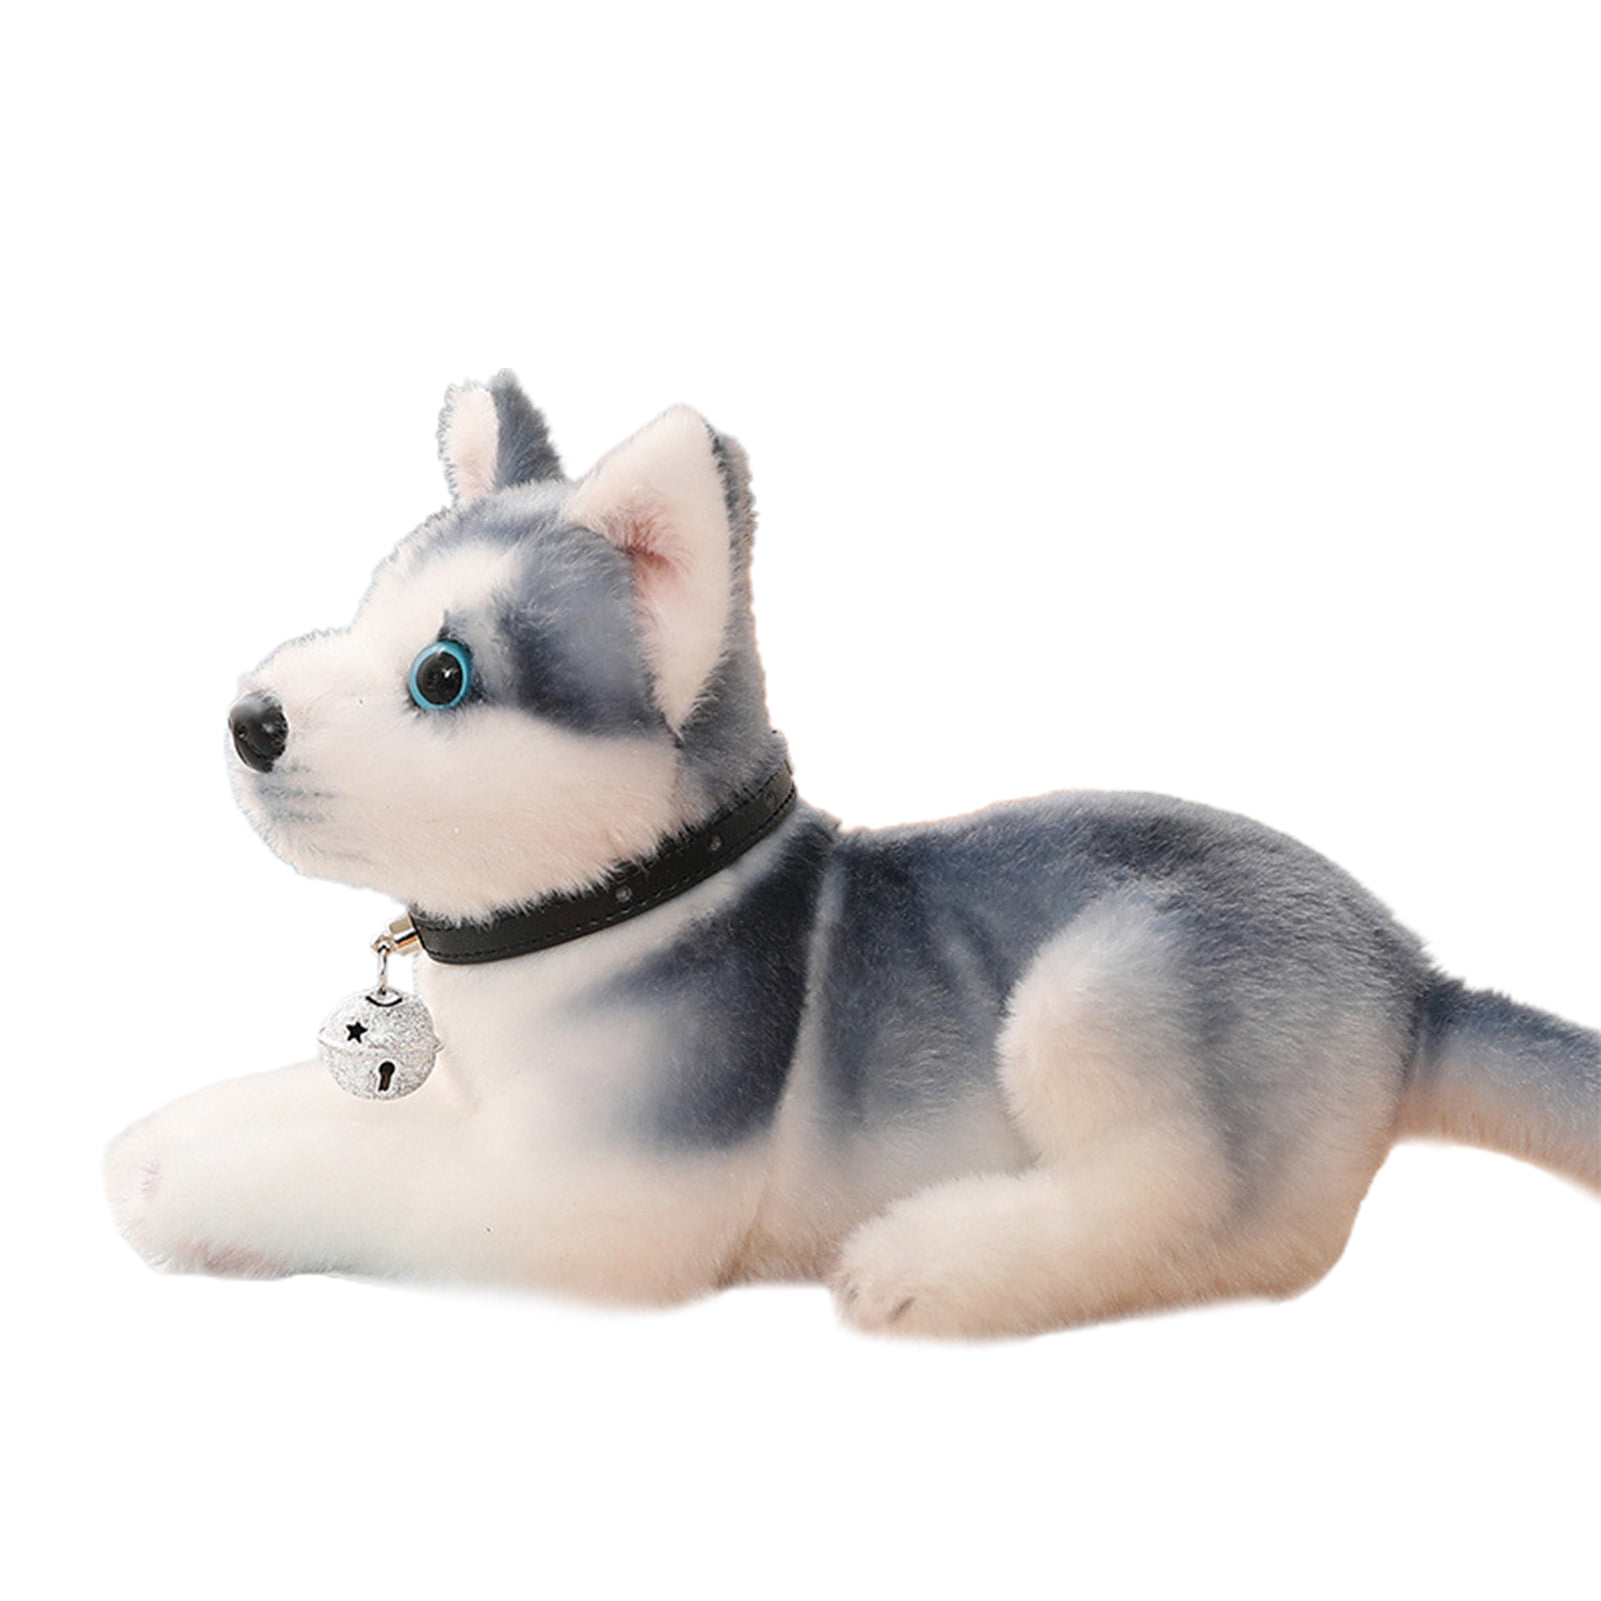 Husky Plush Toy - Realistic Fake Dog - ApolloBox